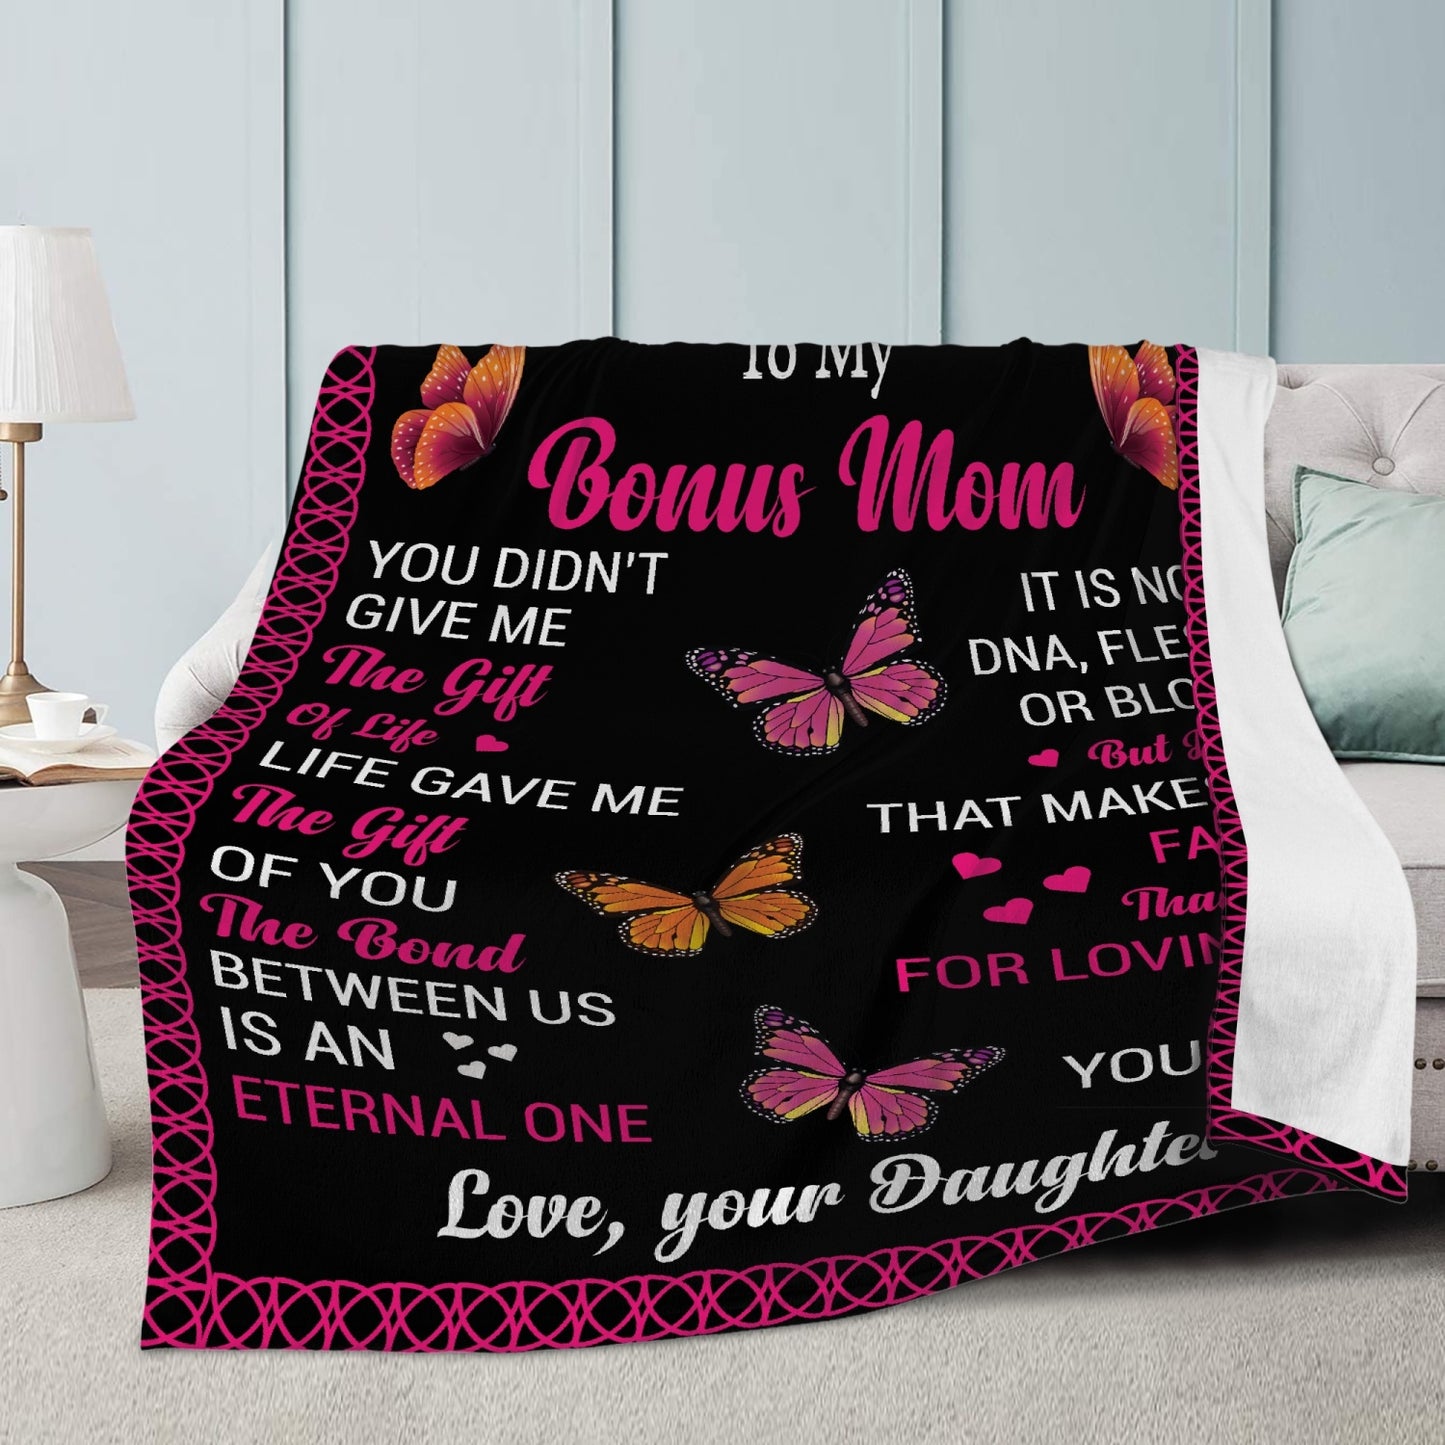 Bonus Mom Fleece Blanket